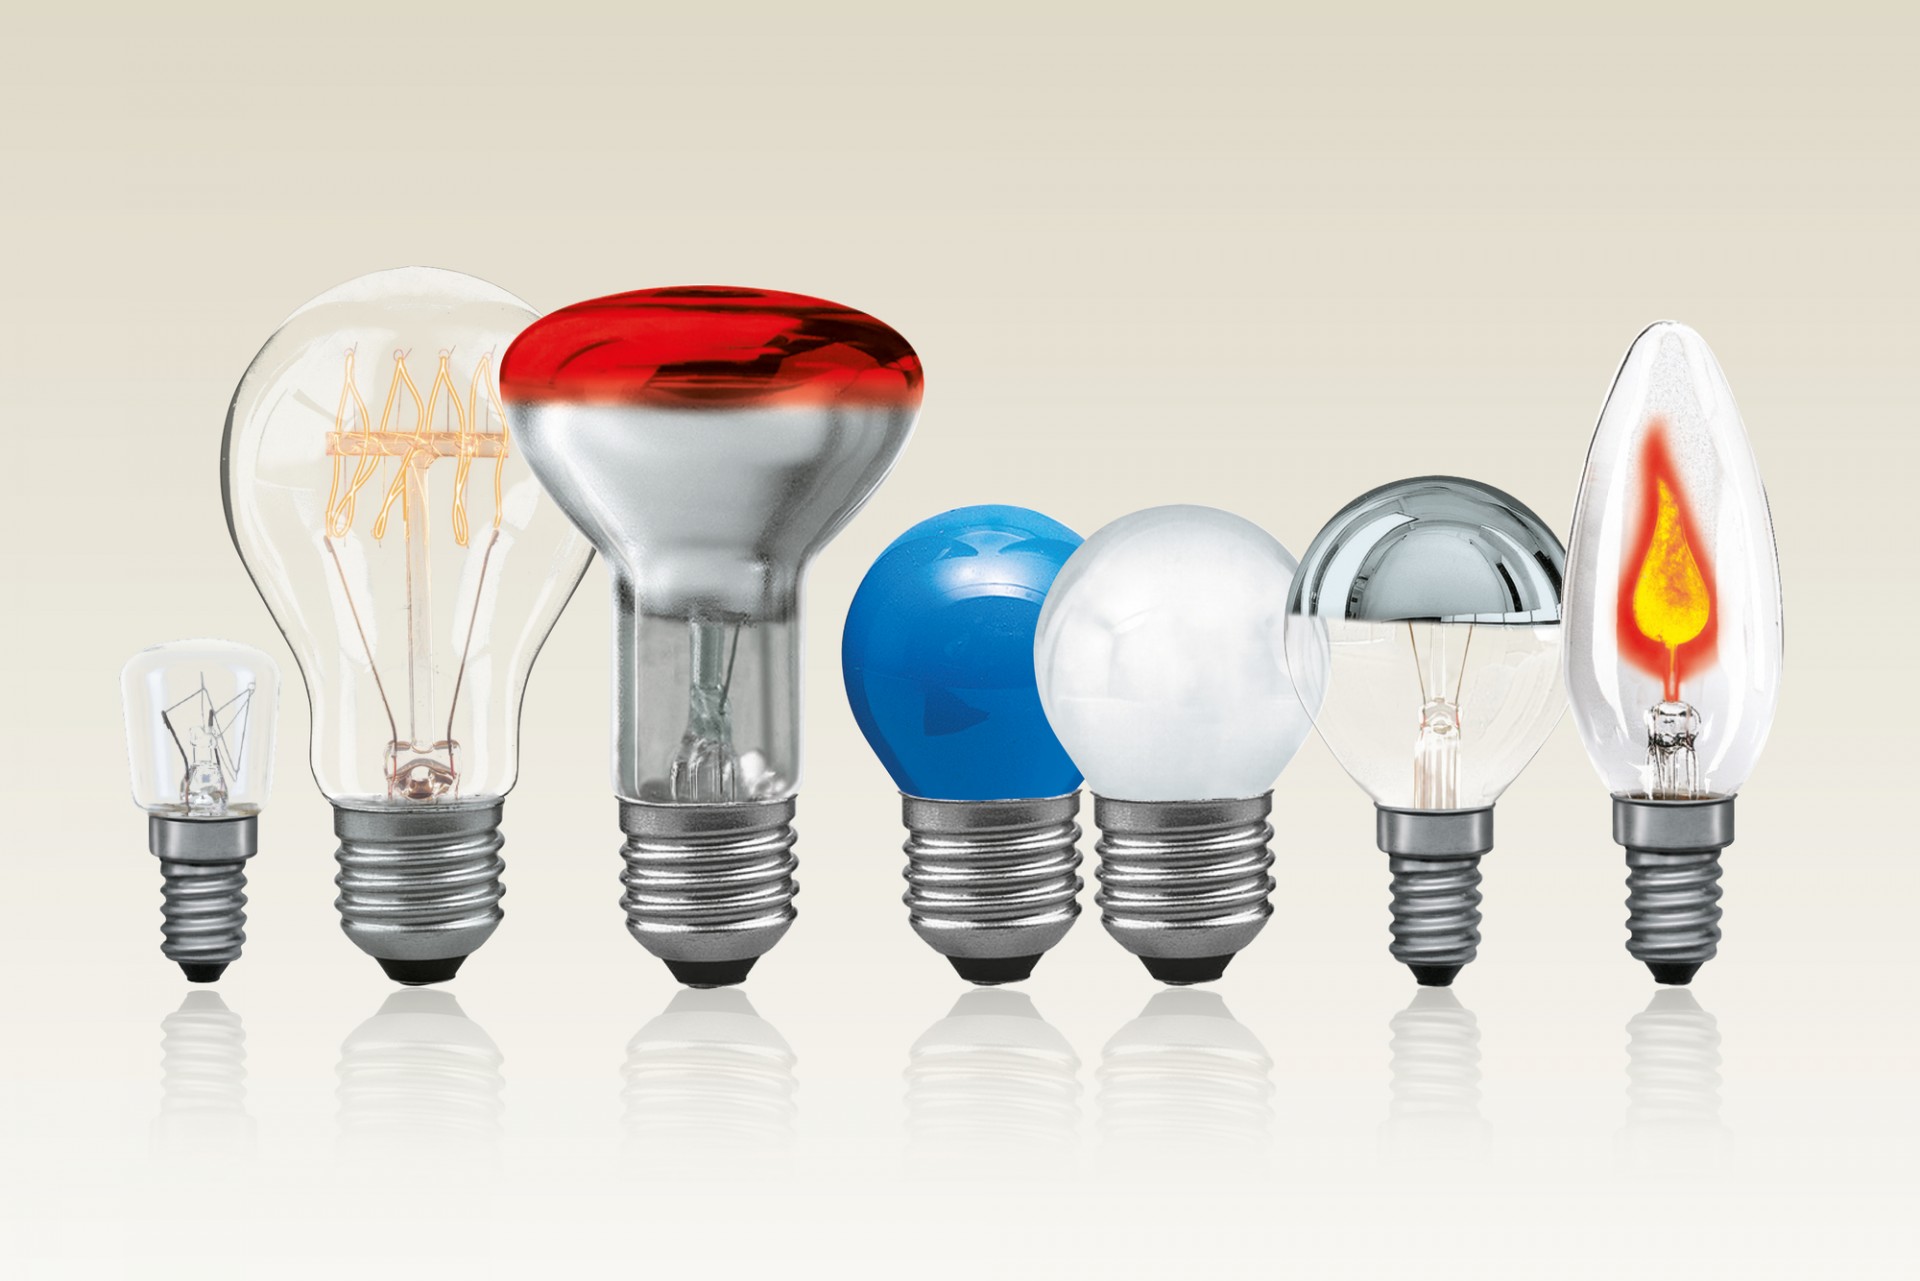 Источники света типа светильников. Разновидности ламп. Угол рассеивания разных ламп. Лампочки накаливания разновидности. Выбор источников света.